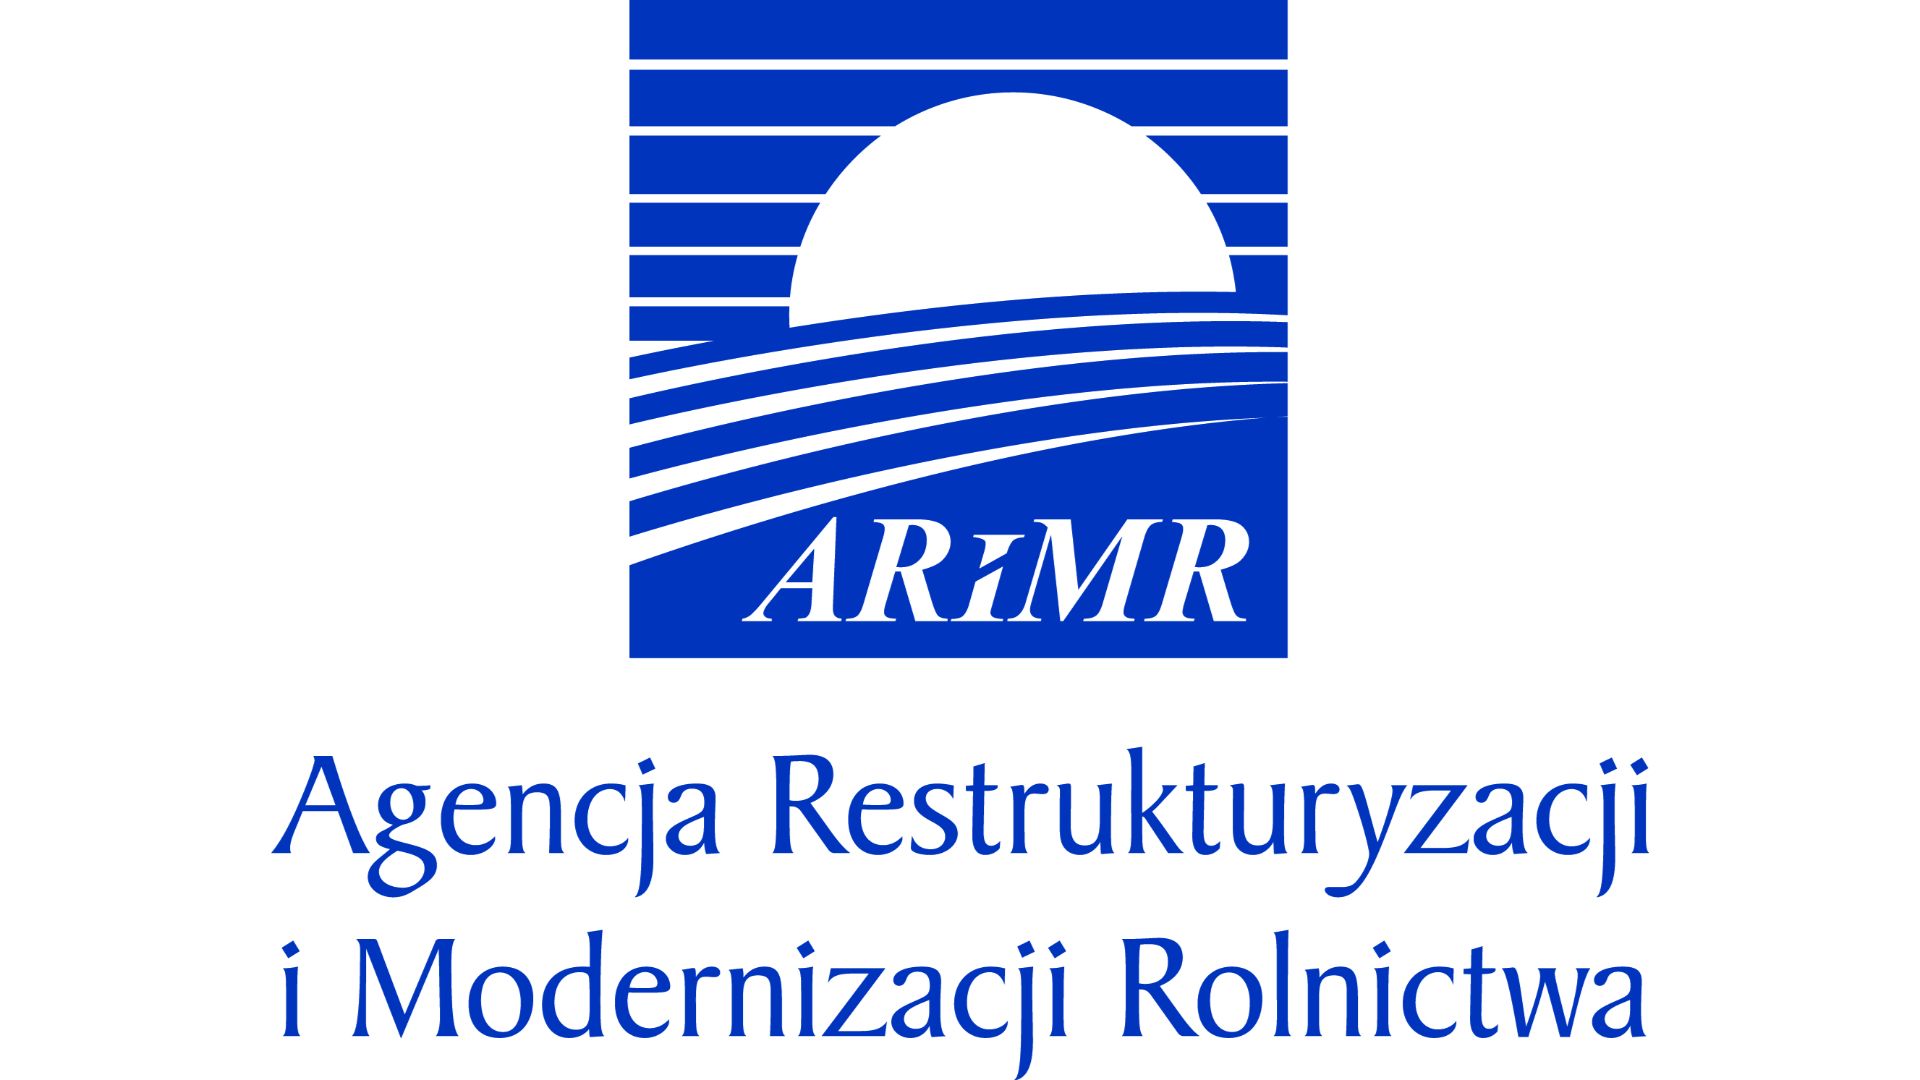 ARMIR logo